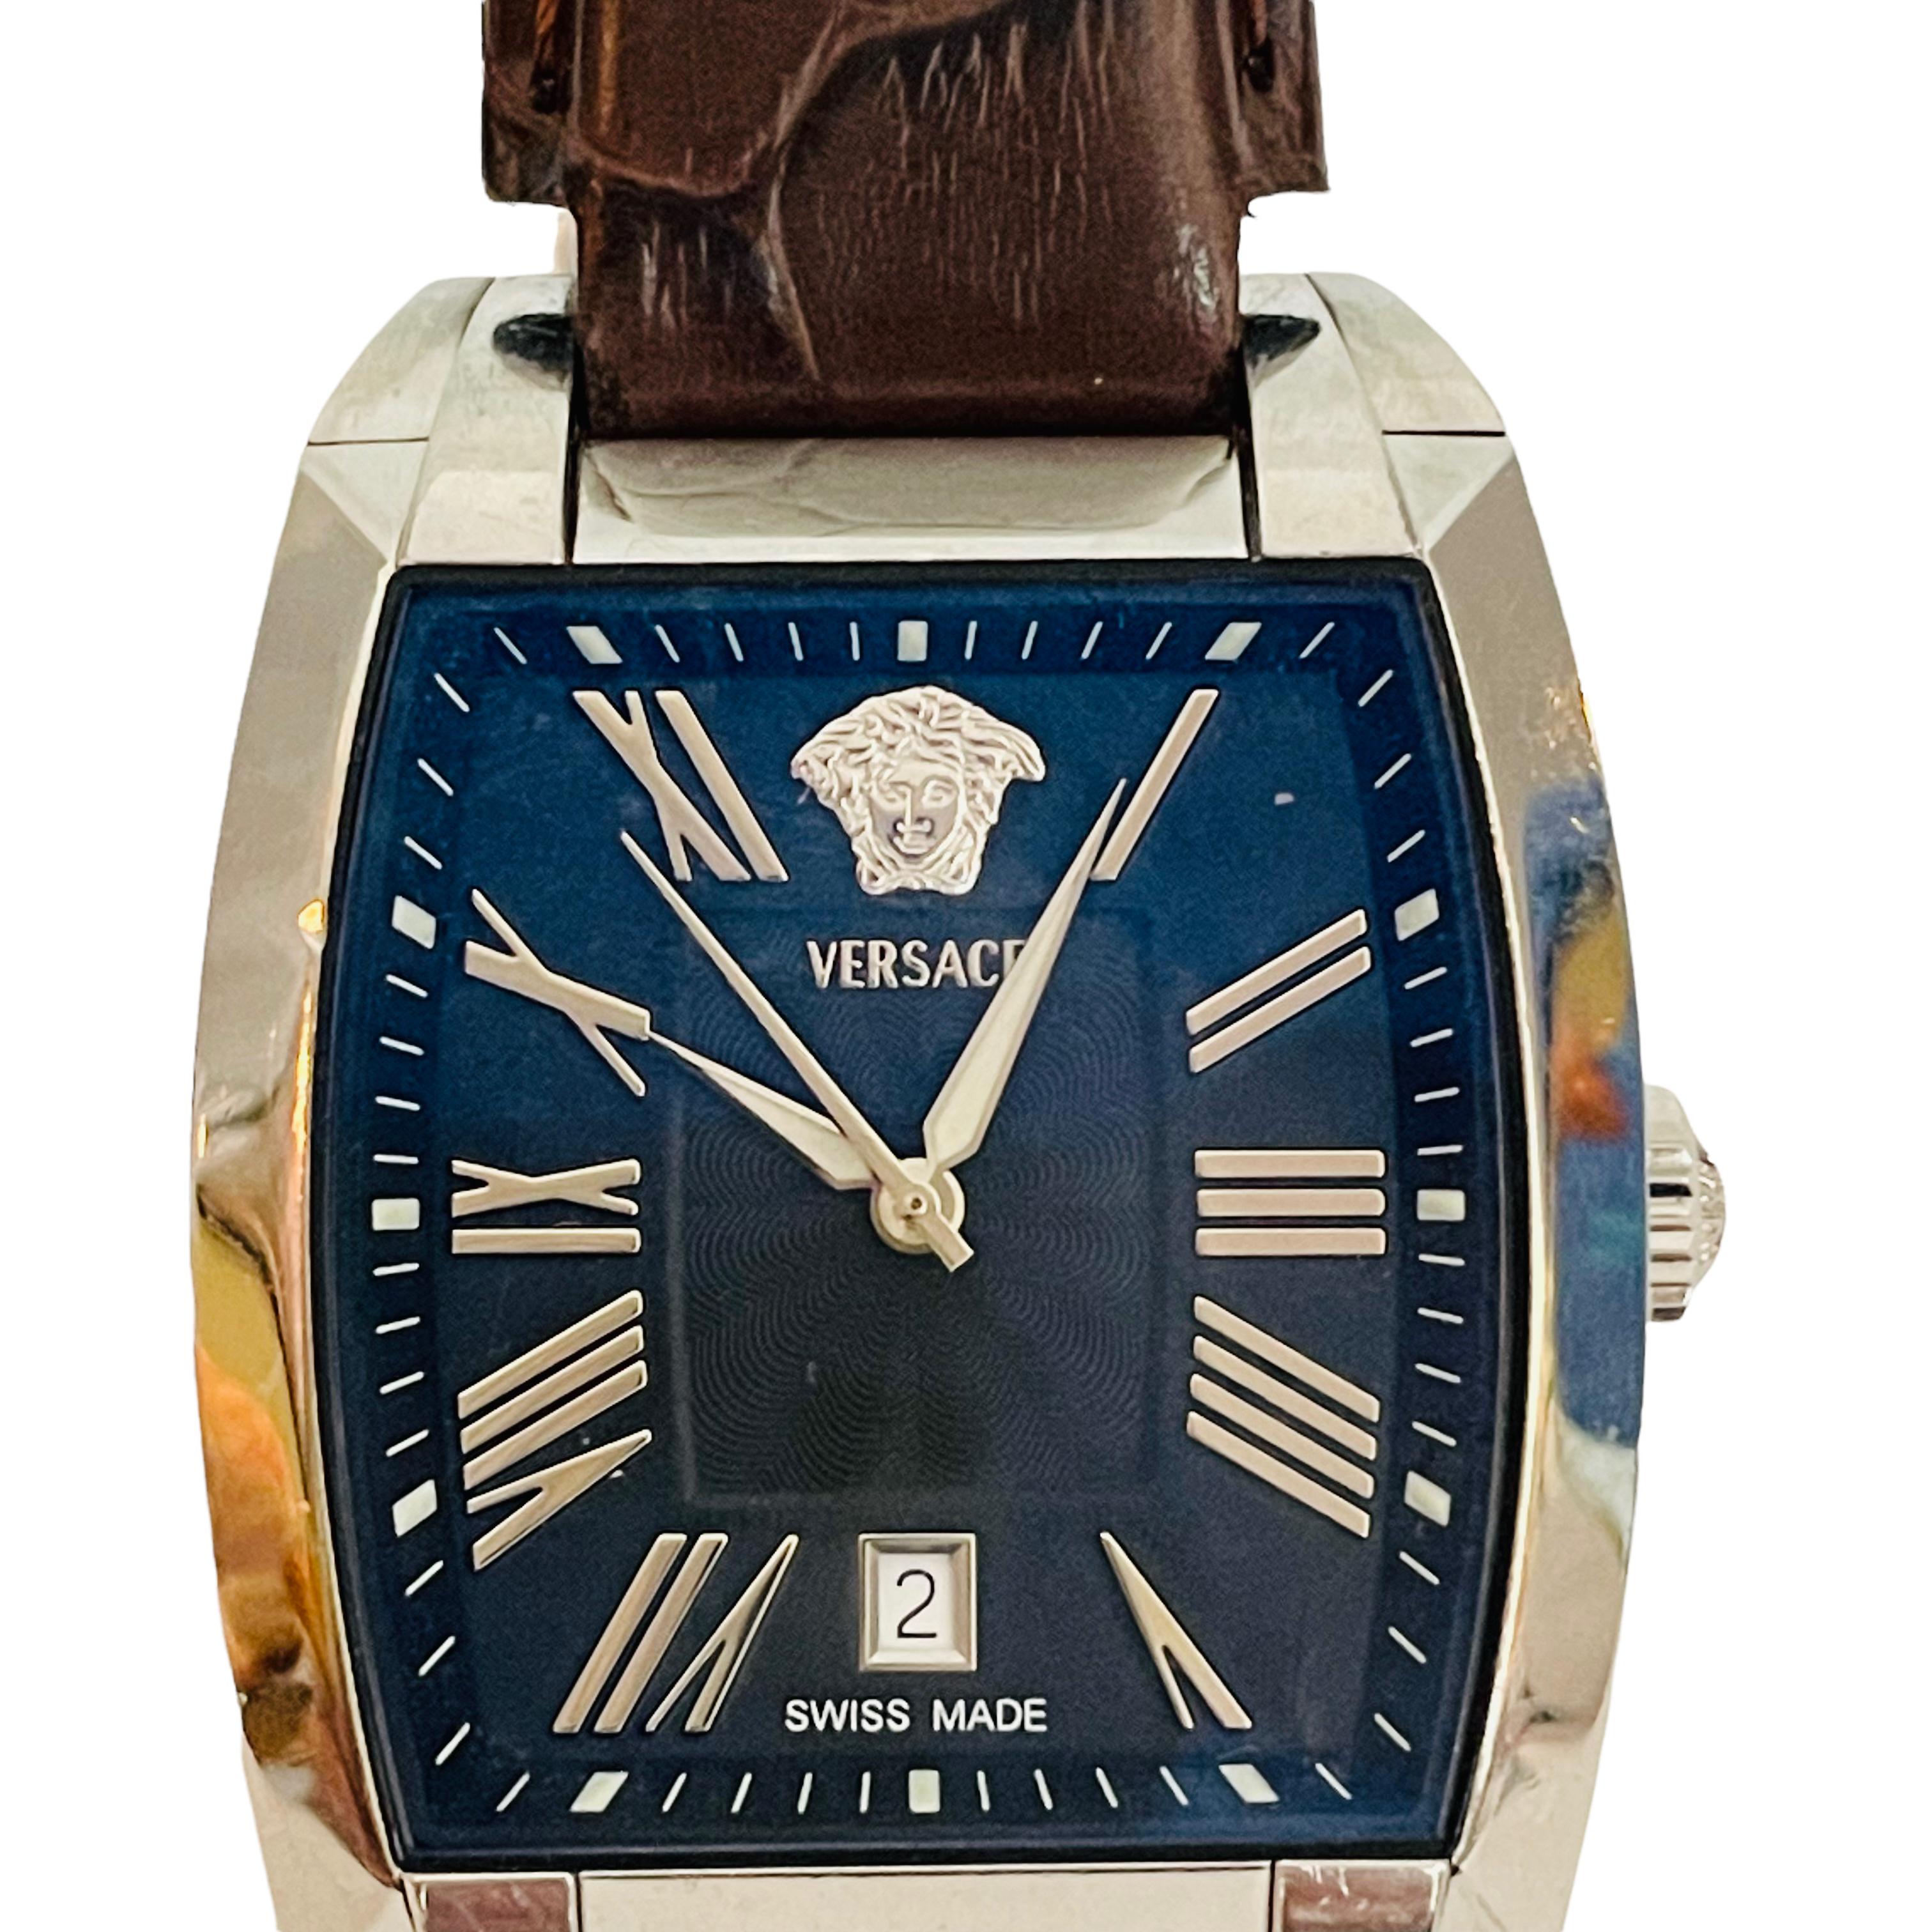 Vintage Versace Tonneau Automatic Men's Watch WLA99 1 3/8in Blue & Black Face 2